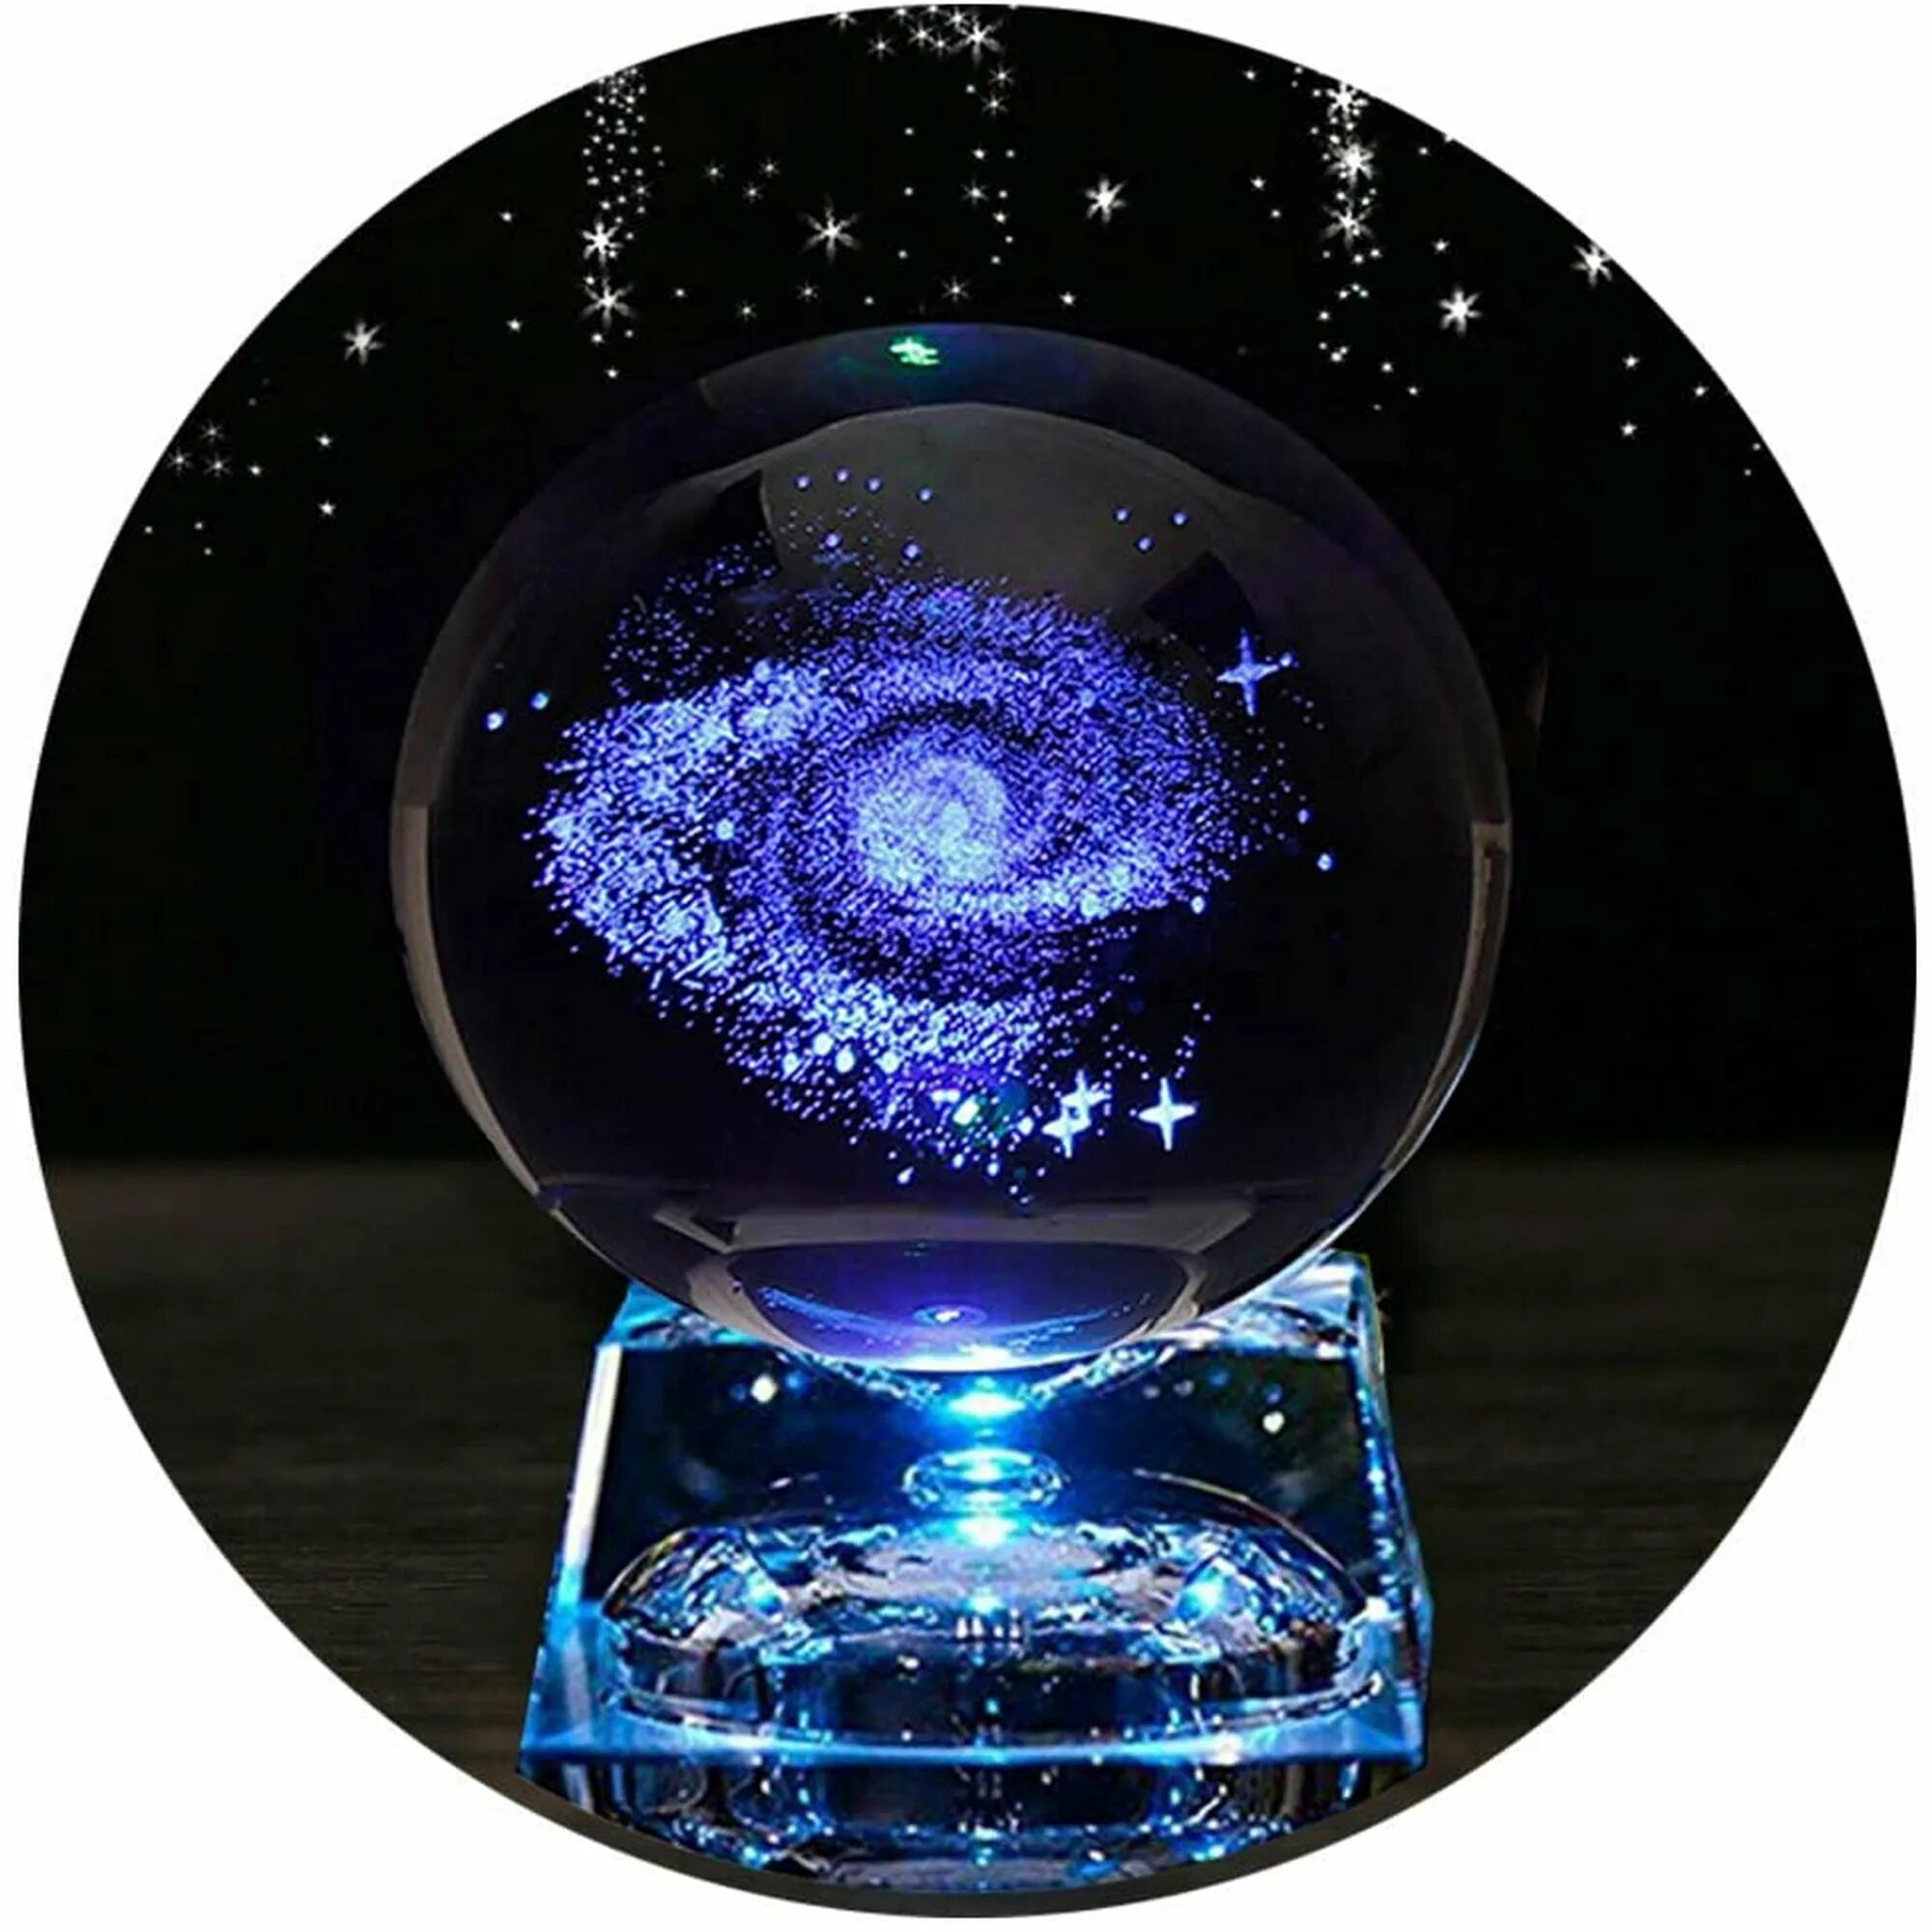 Хрустальный шар. Хрустальный шар Галактика. Хрустальный шар с подсветкой. Космический шар. Crystal galaxy